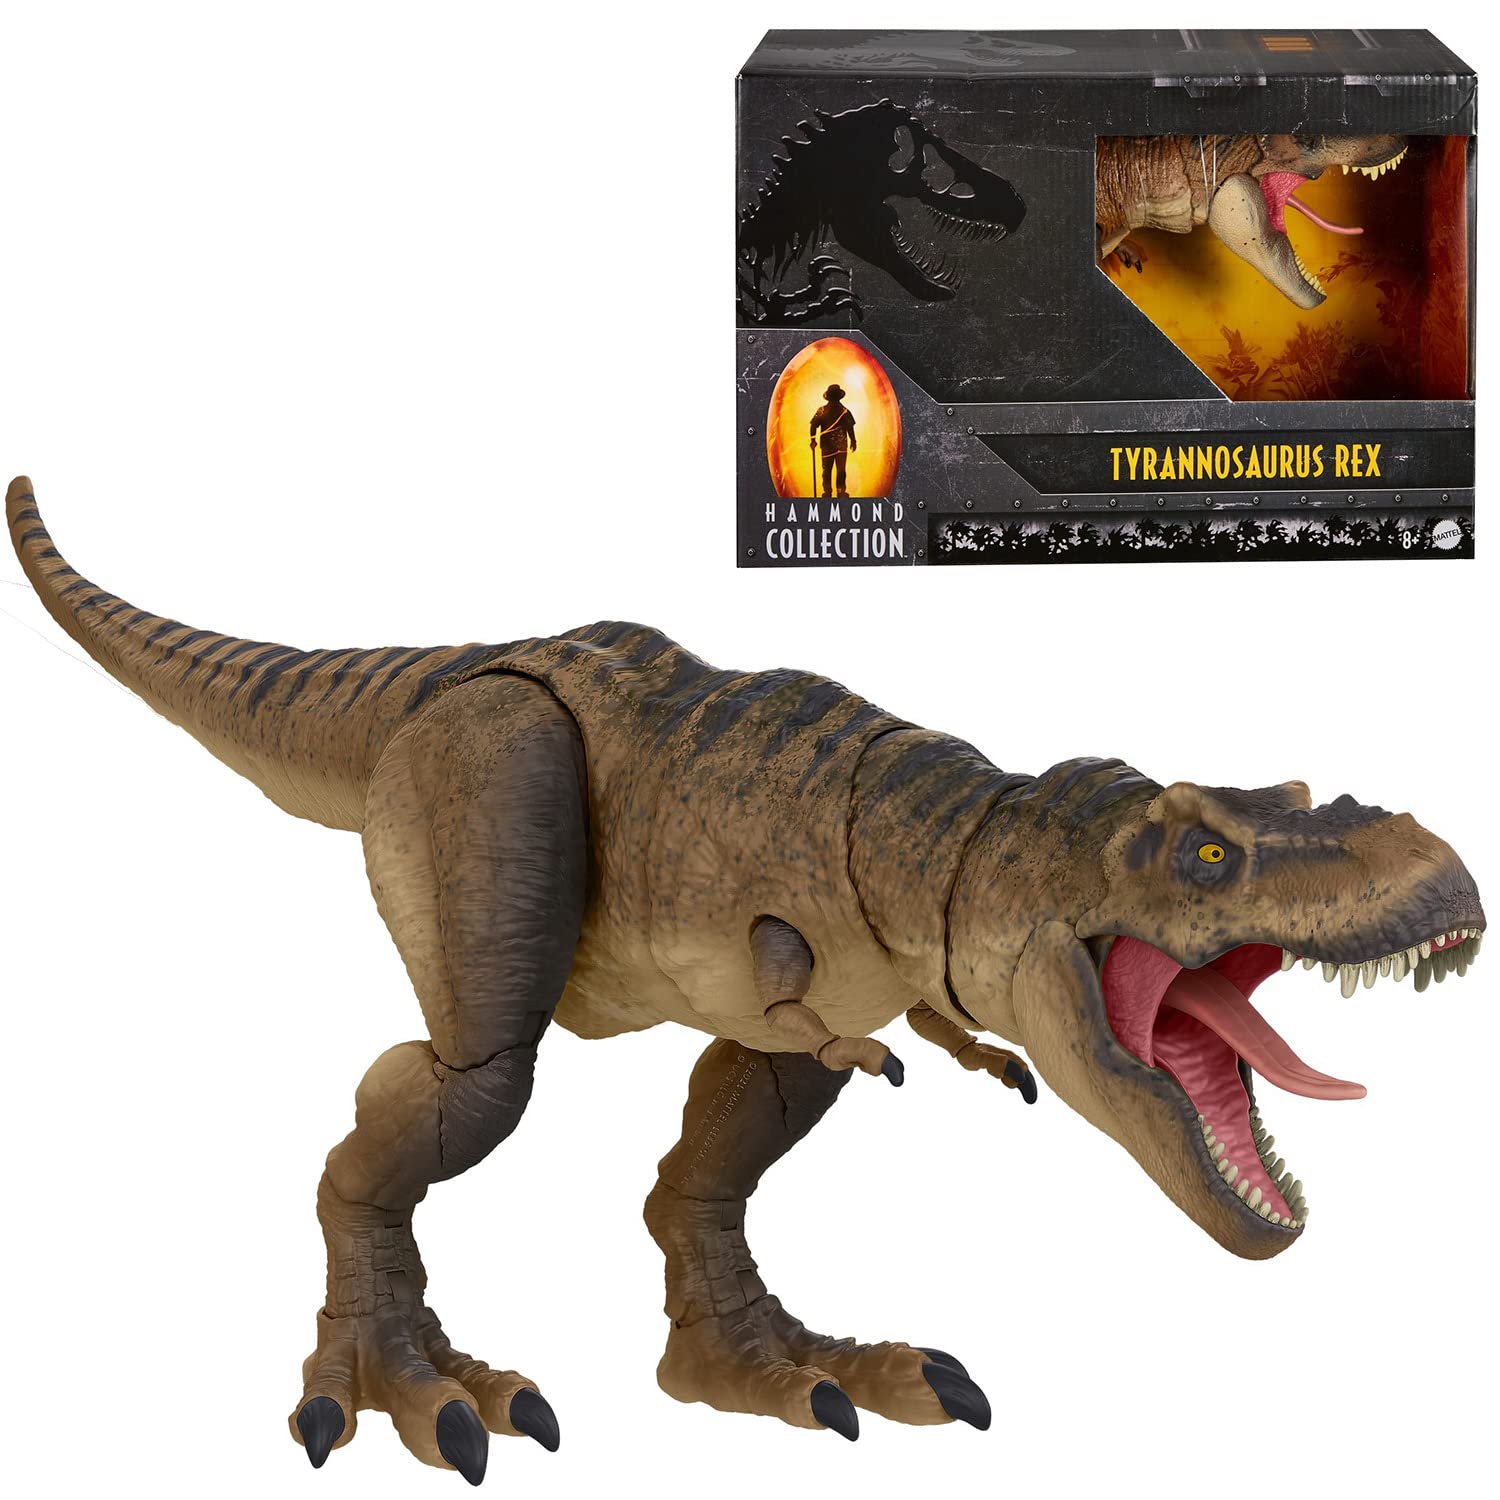 $27.99: Mattel Jurassic World Toys Jurassic Park Hammond Collection T Rex at Amazon